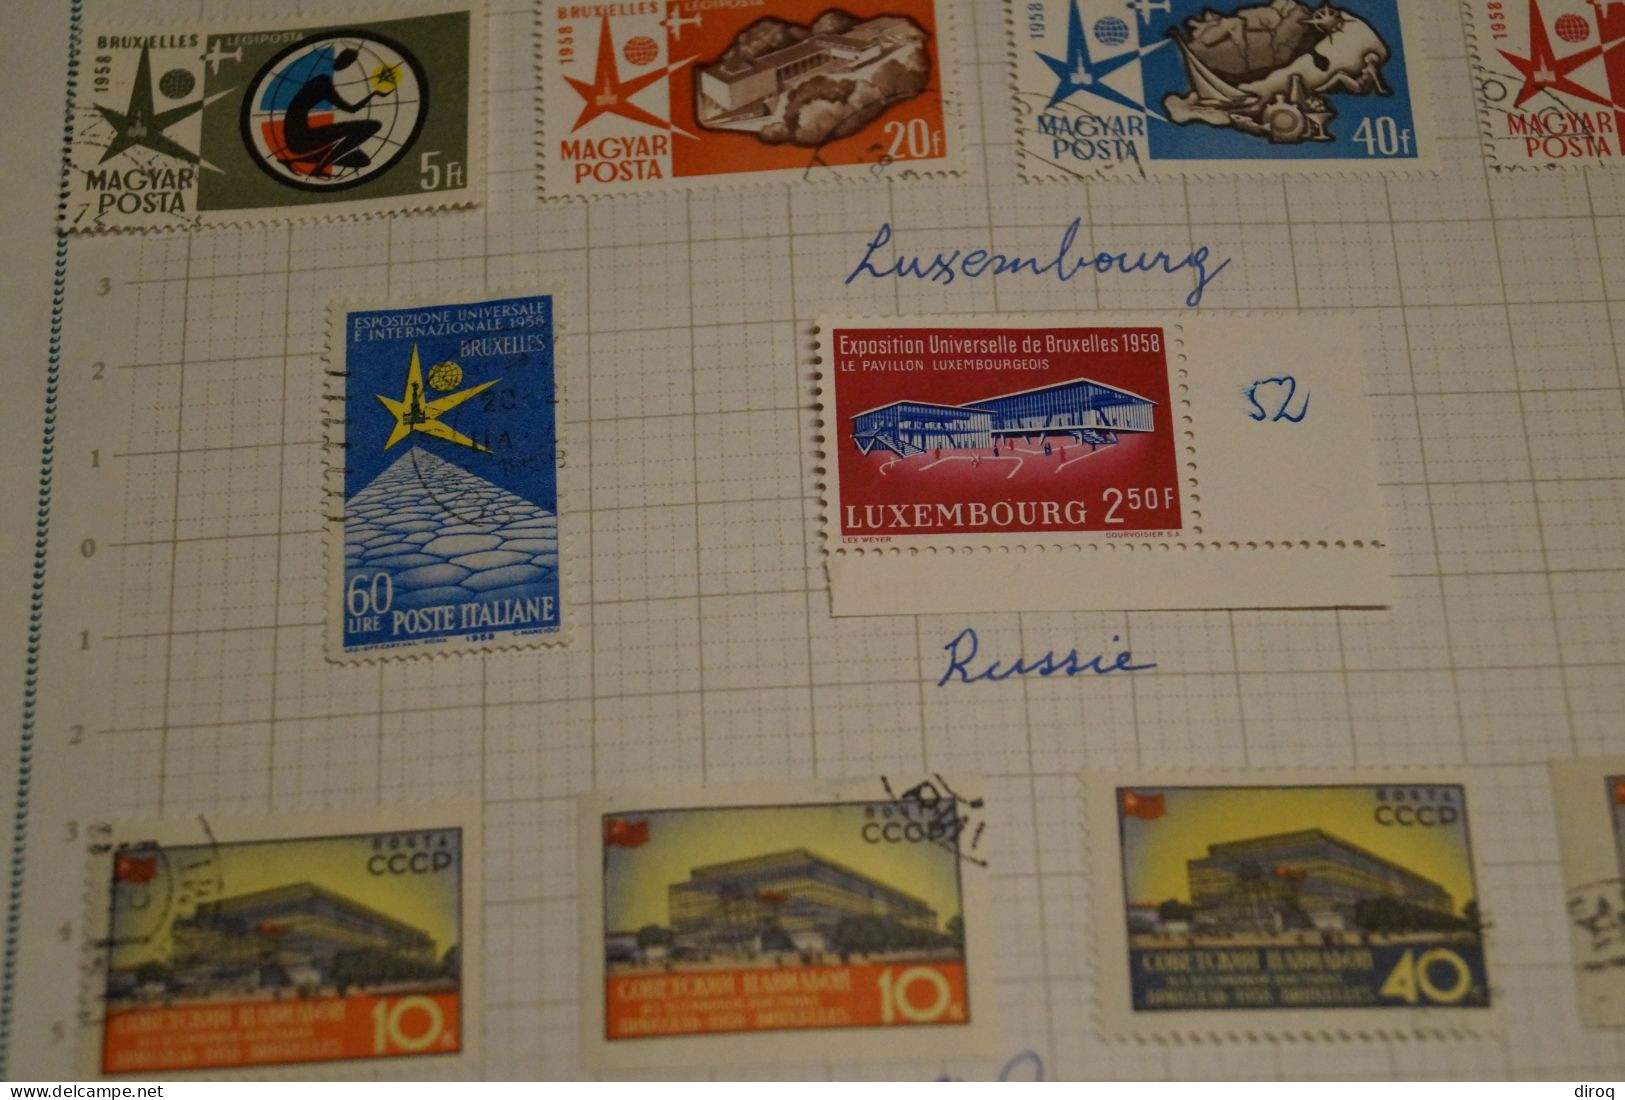 Expo 58 Bruxelles,36 timbres,neuf et certains oblitérés,voir photos,superbe état ,sur charnière,voir photos